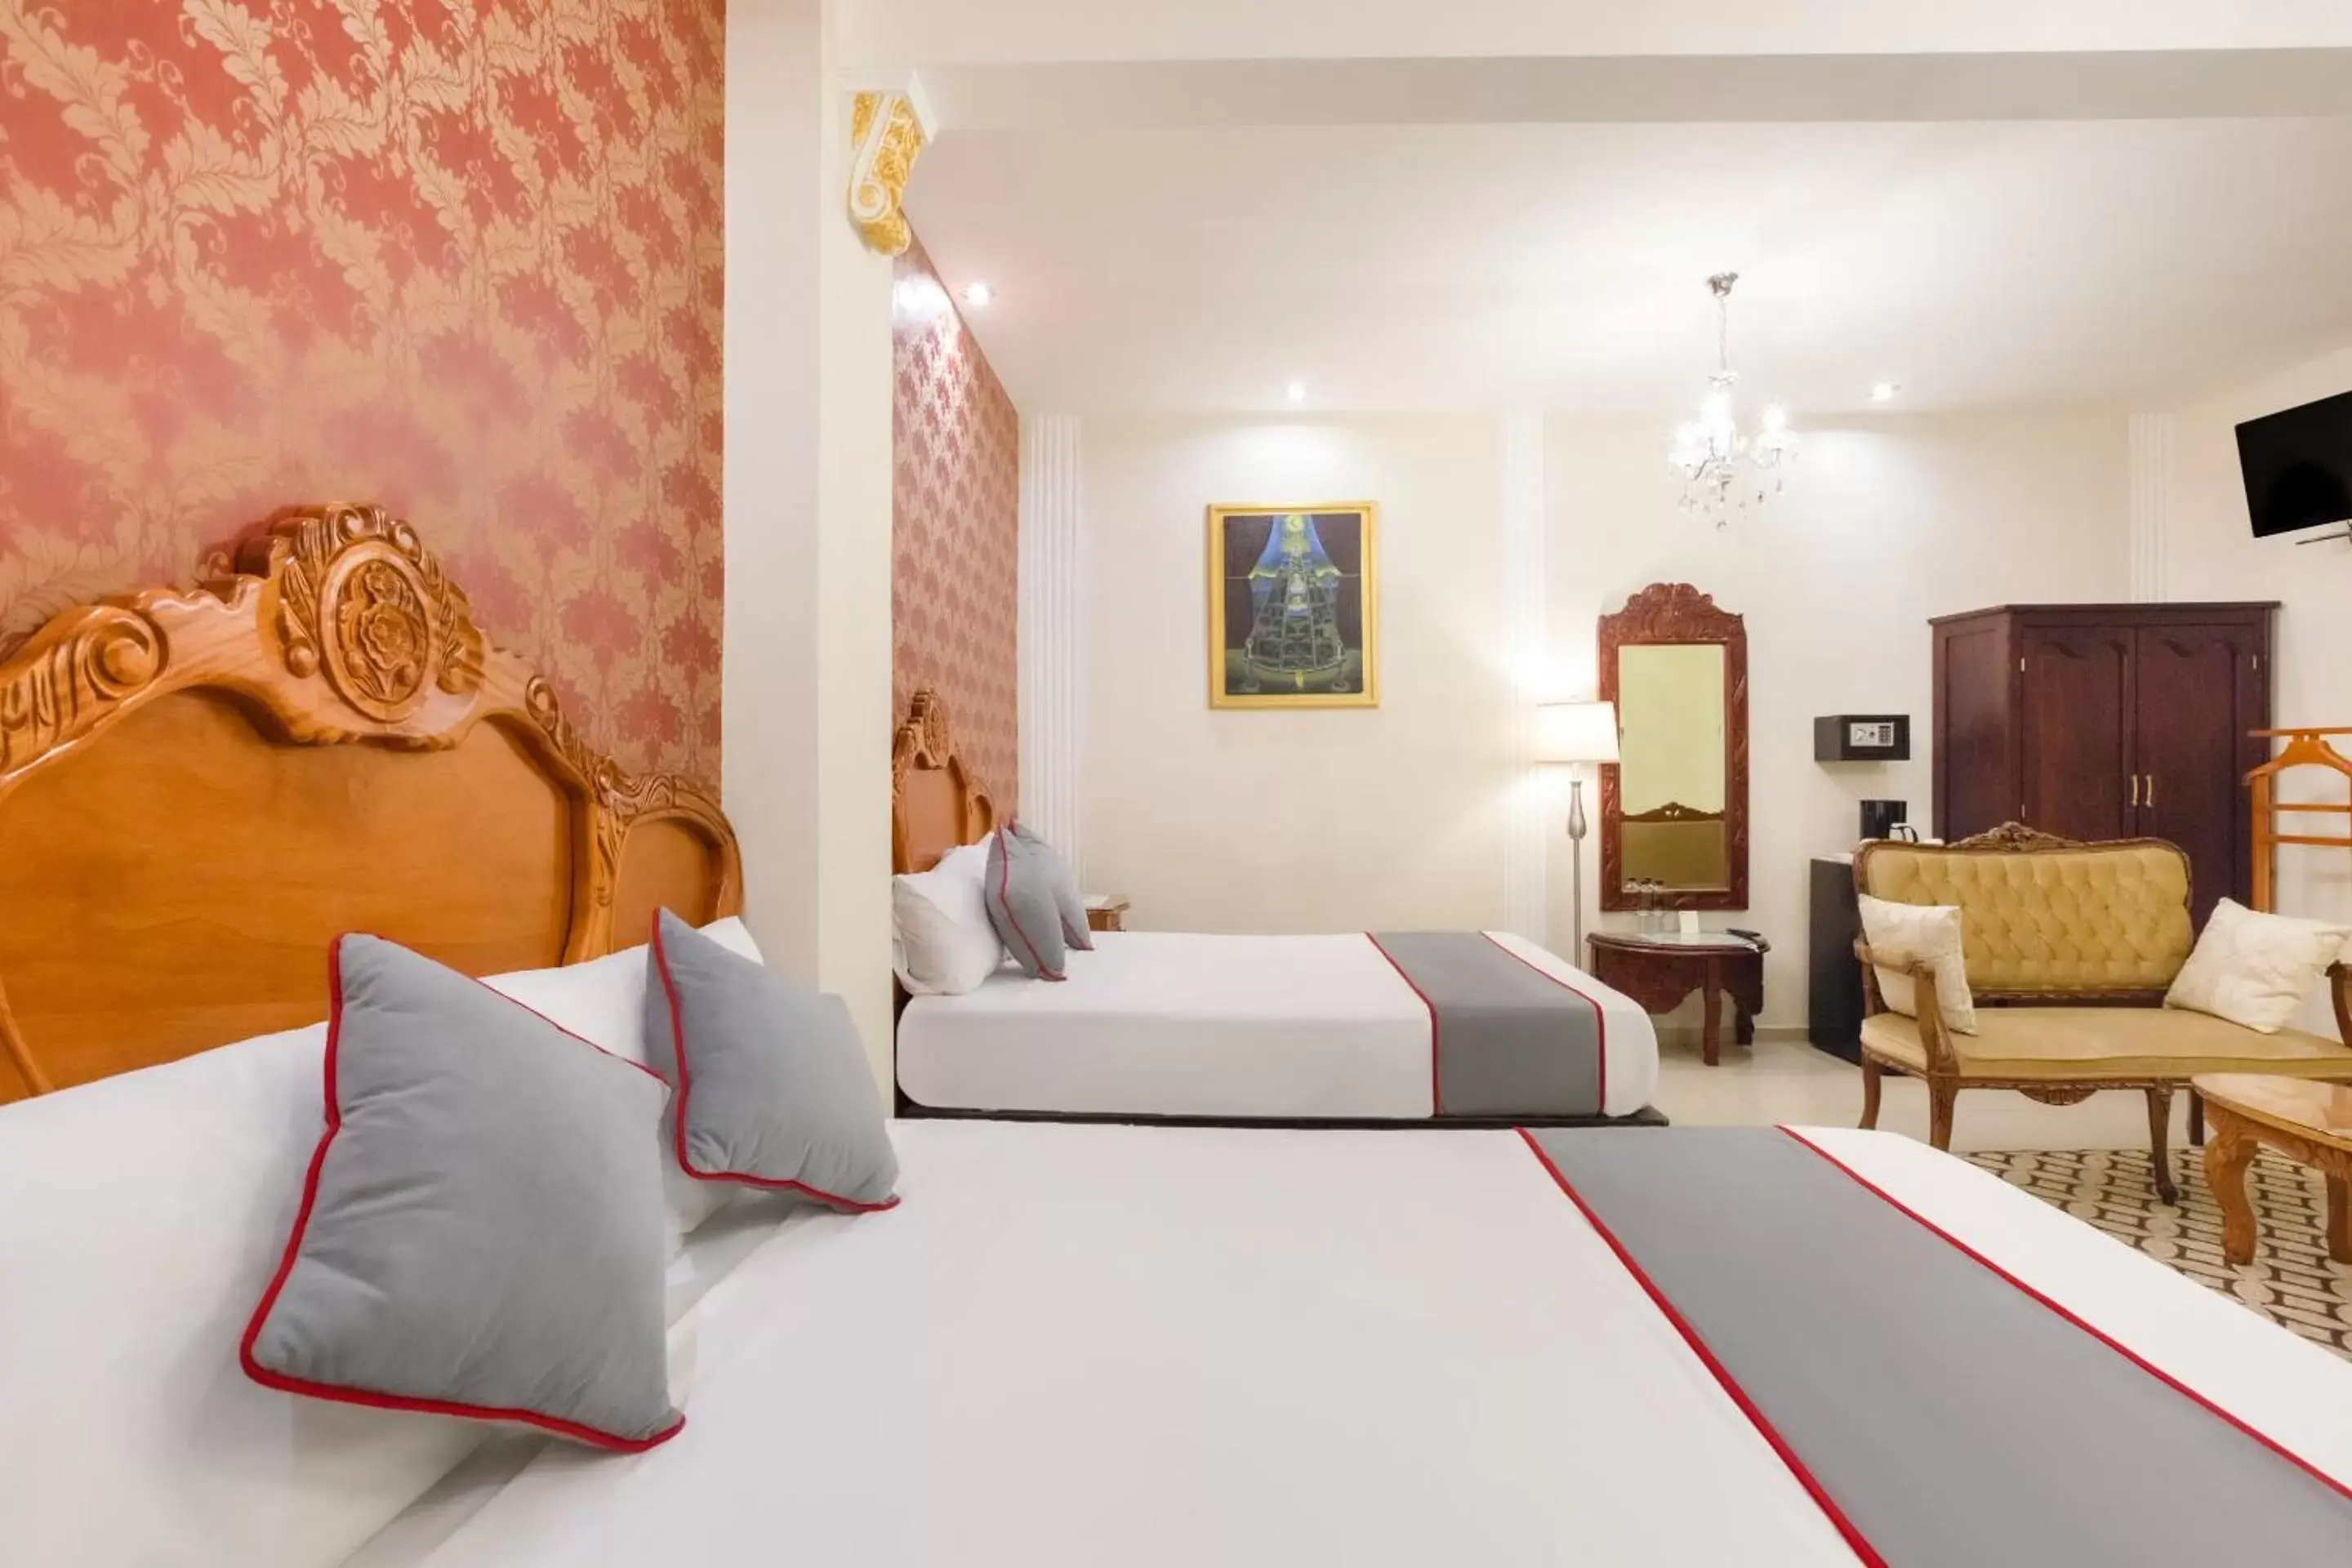 Bed, Room Photo in Hotel Boutique Casa Garay